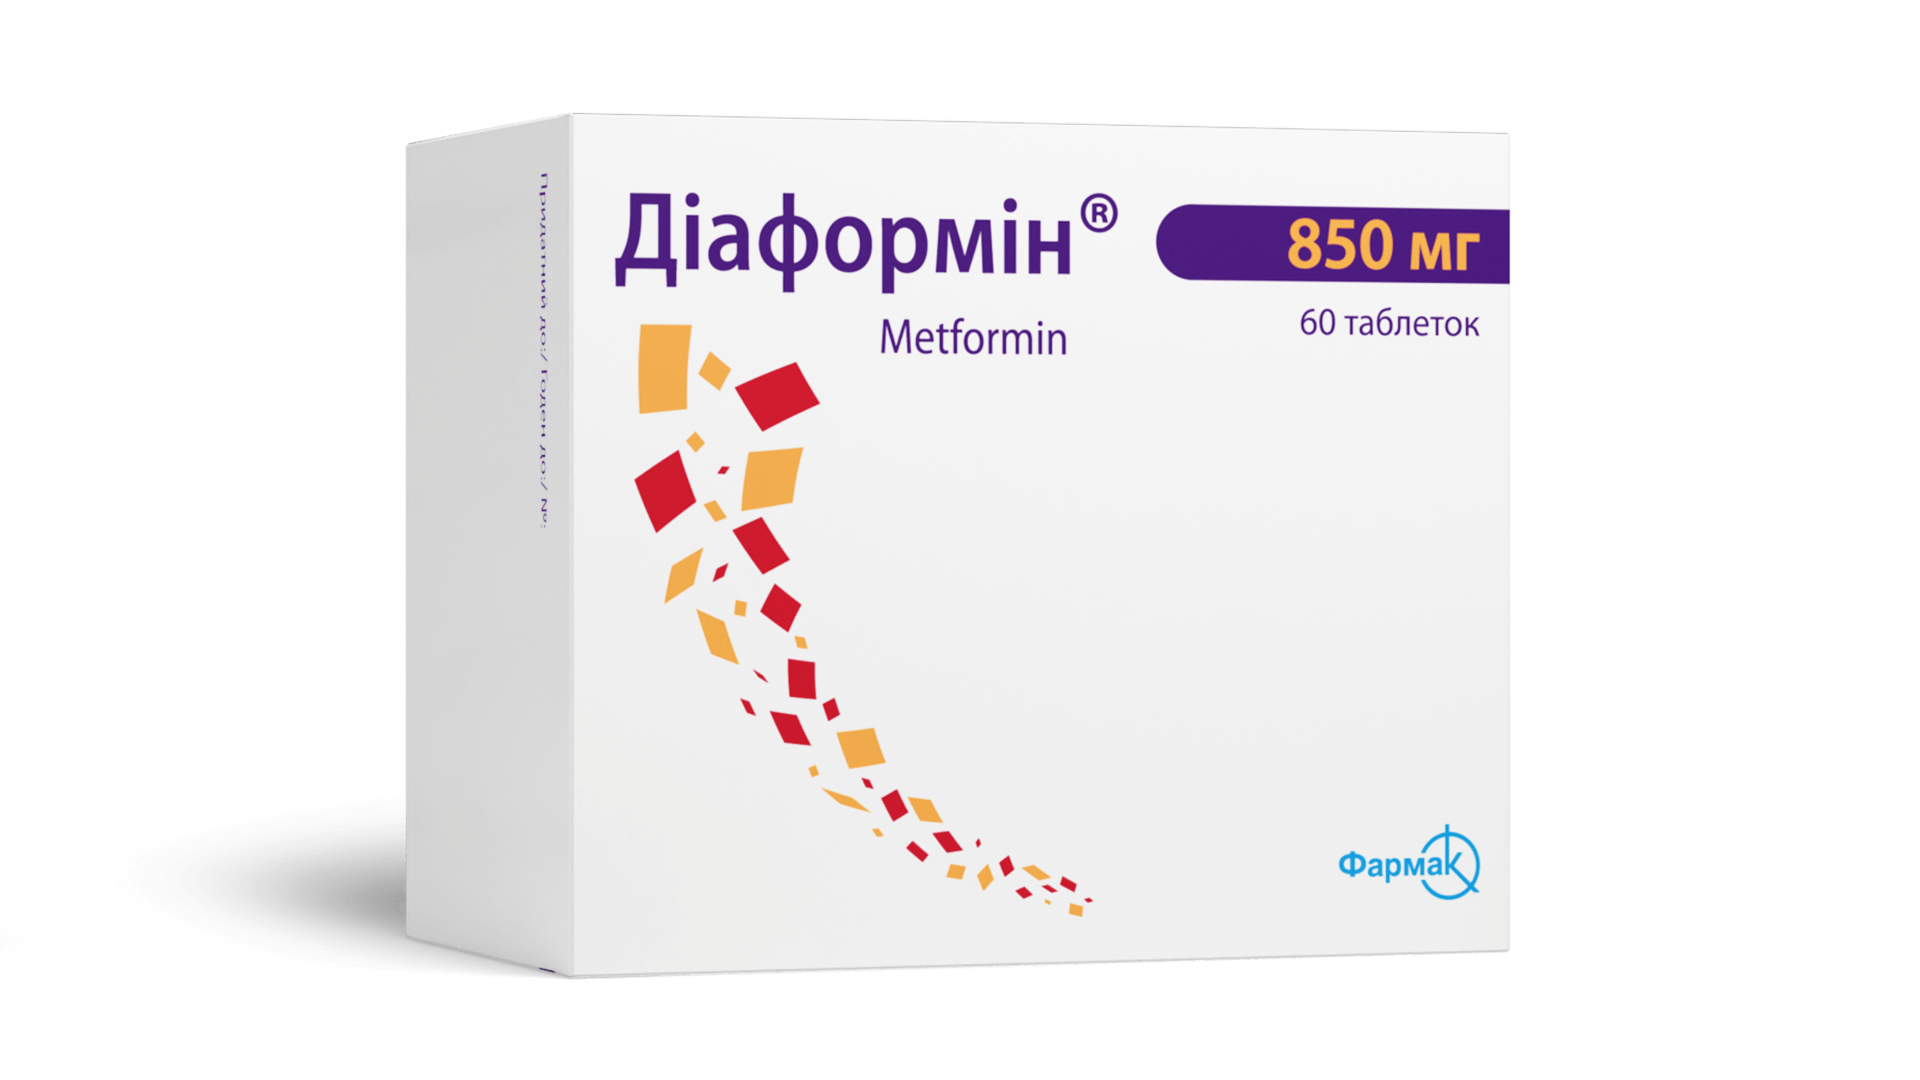 Диаформин® 850 мг (4)